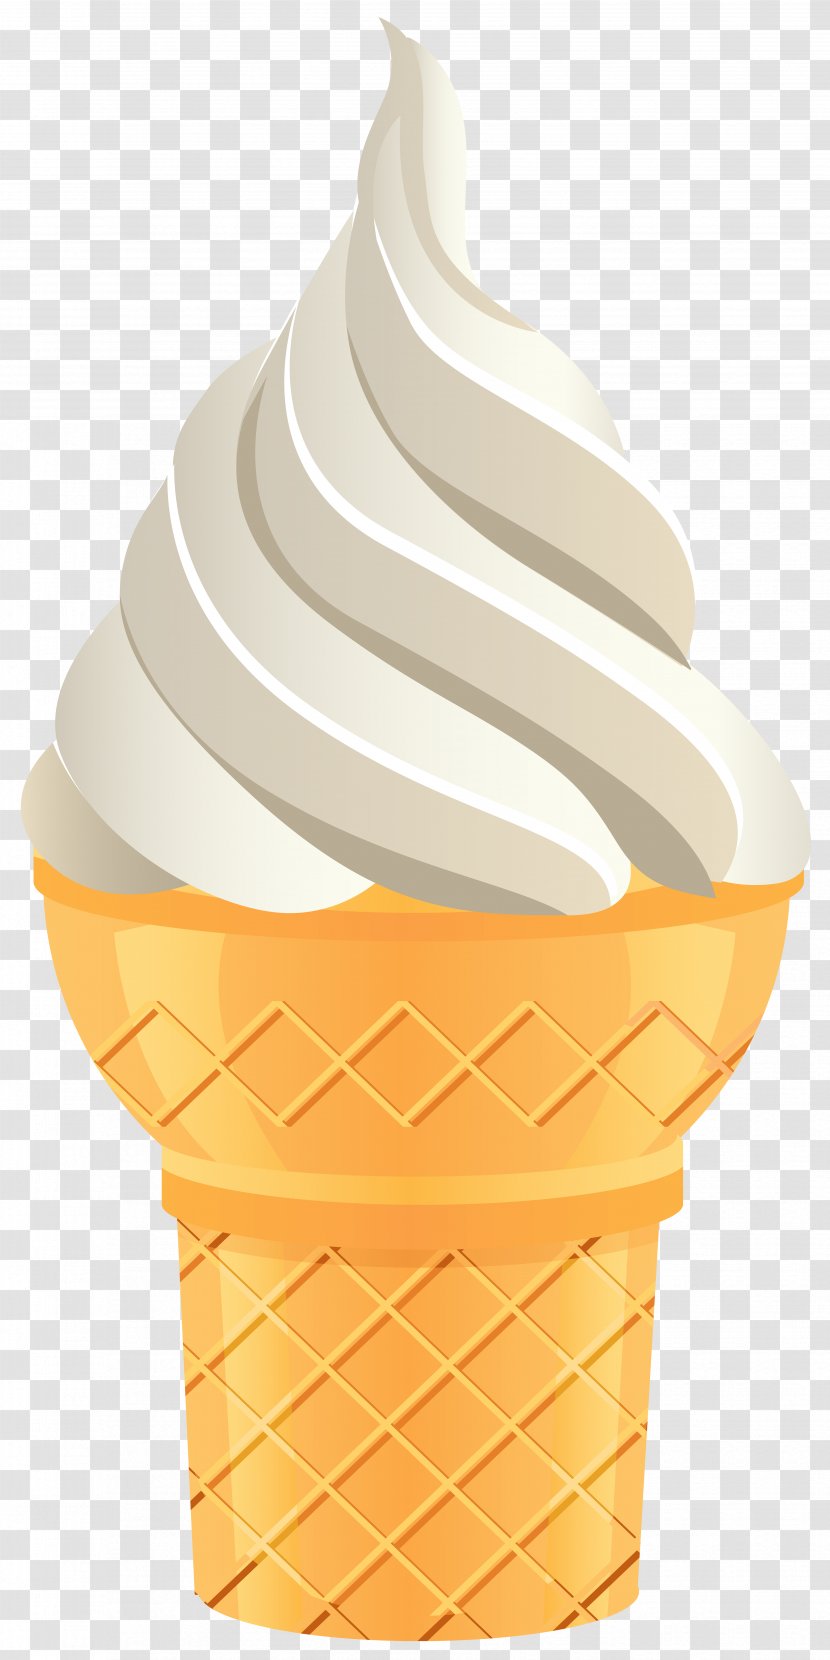 Ice Cream Cone Flavor Cup - Vanilla Transparent Clip Art Image Transparent PNG